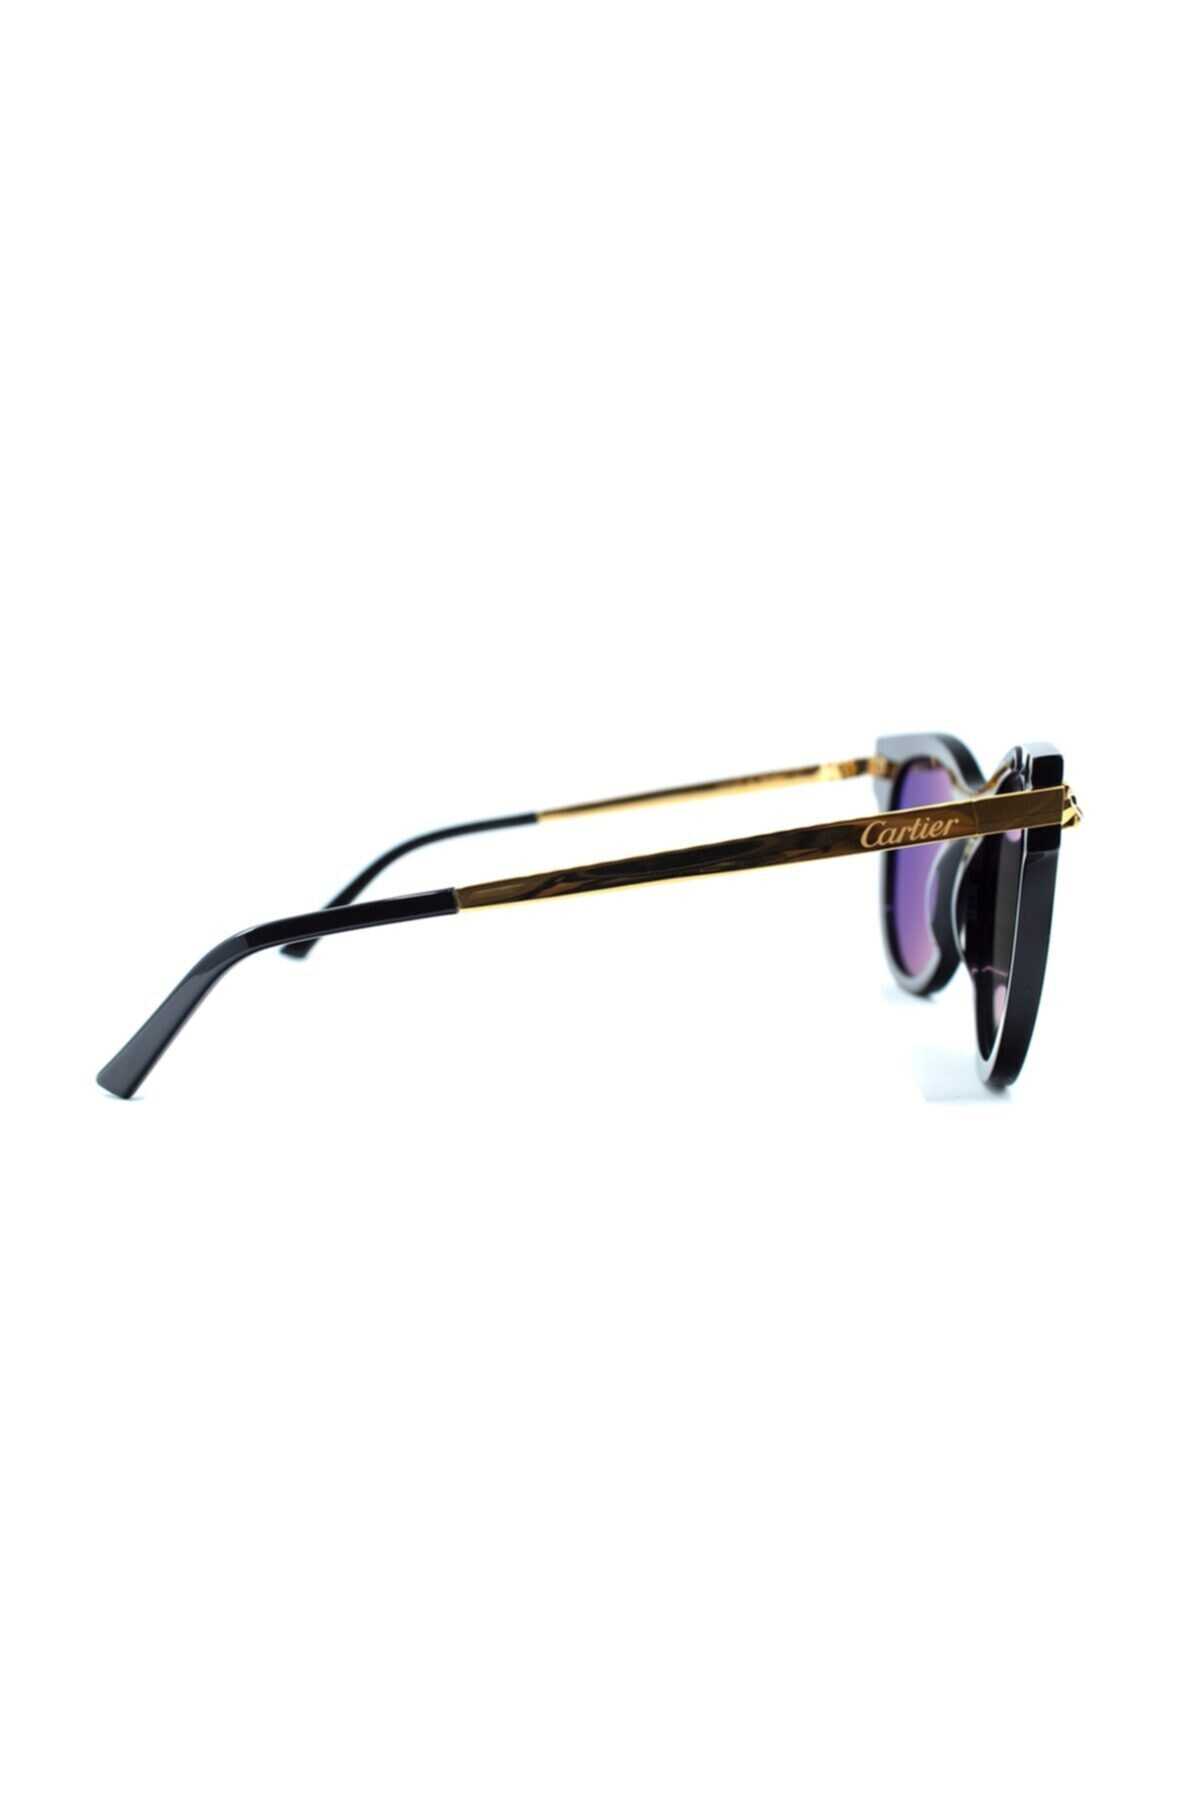 عینک آفتابی یونیسکس مدل Ct0024s 001 50 مشکی طلایی برند Cartier 